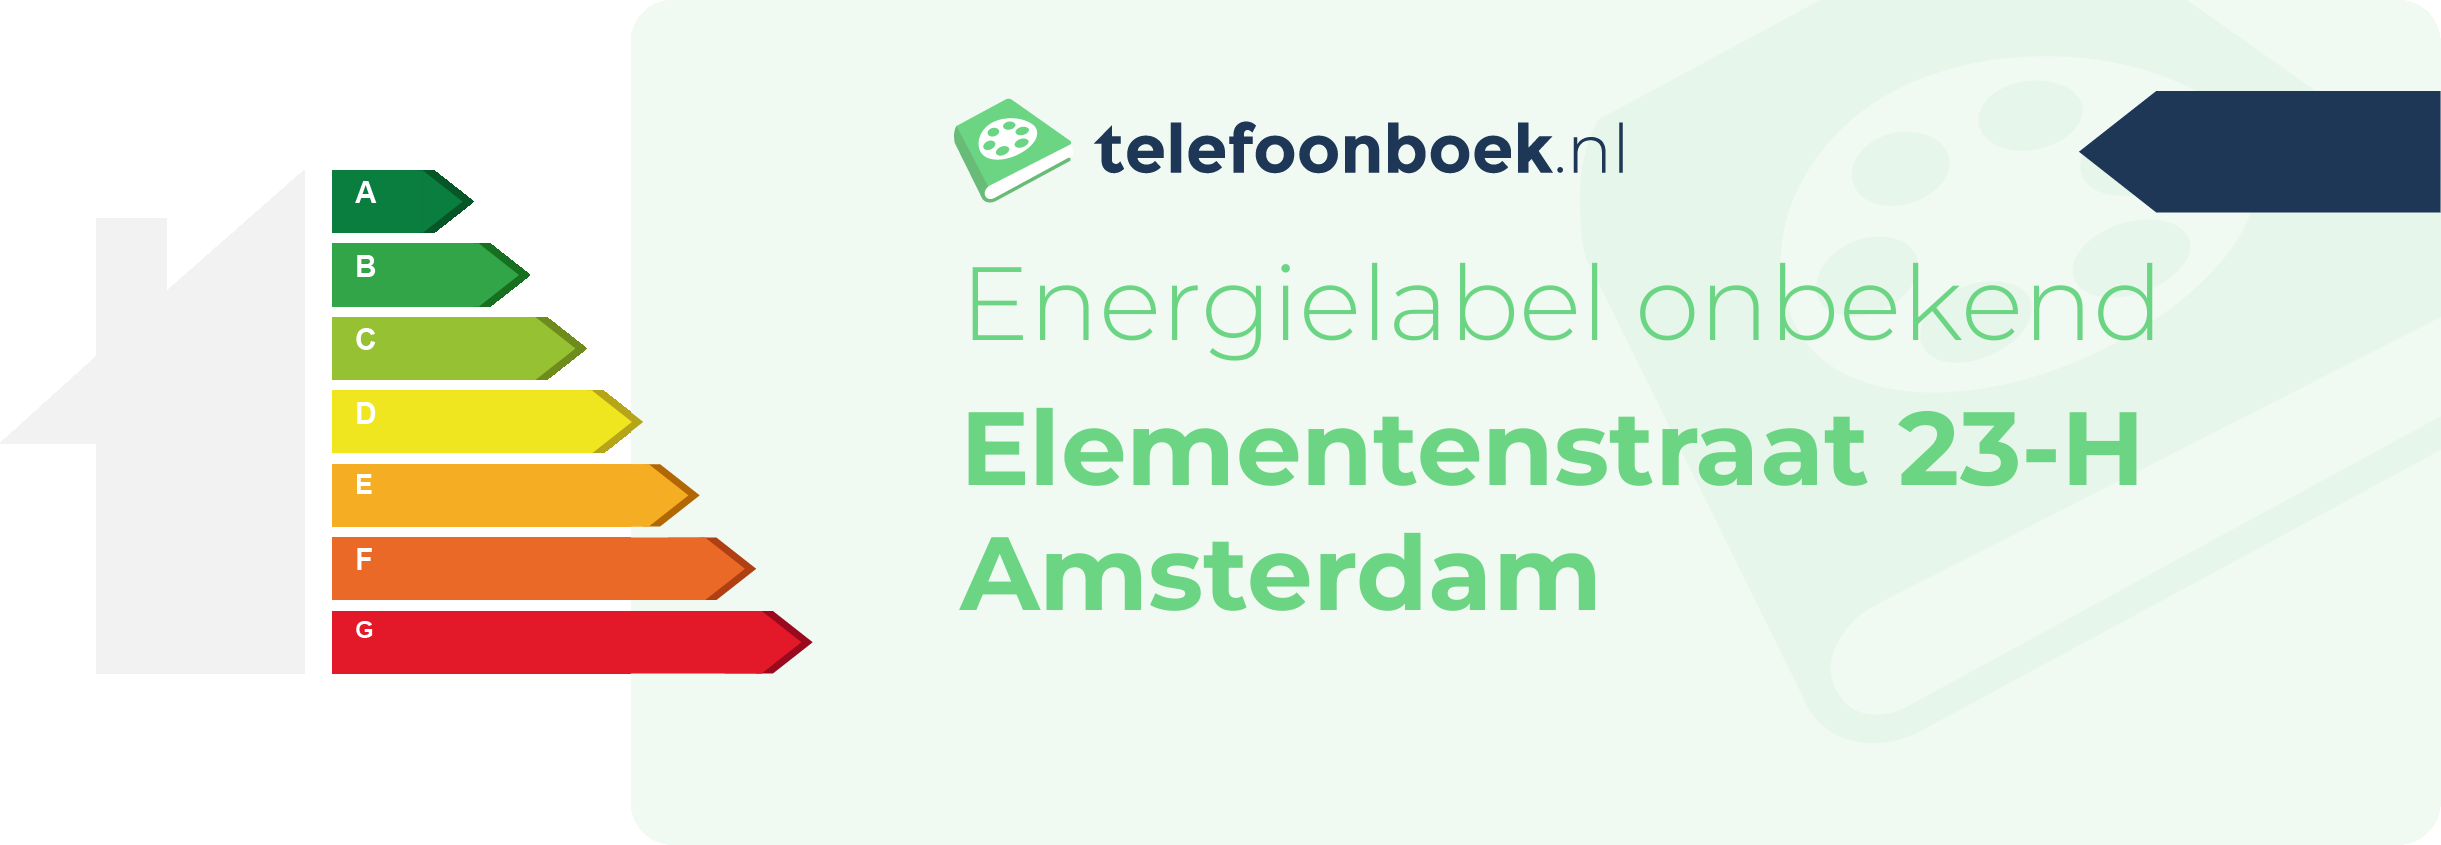 Energielabel Elementenstraat 23-H Amsterdam